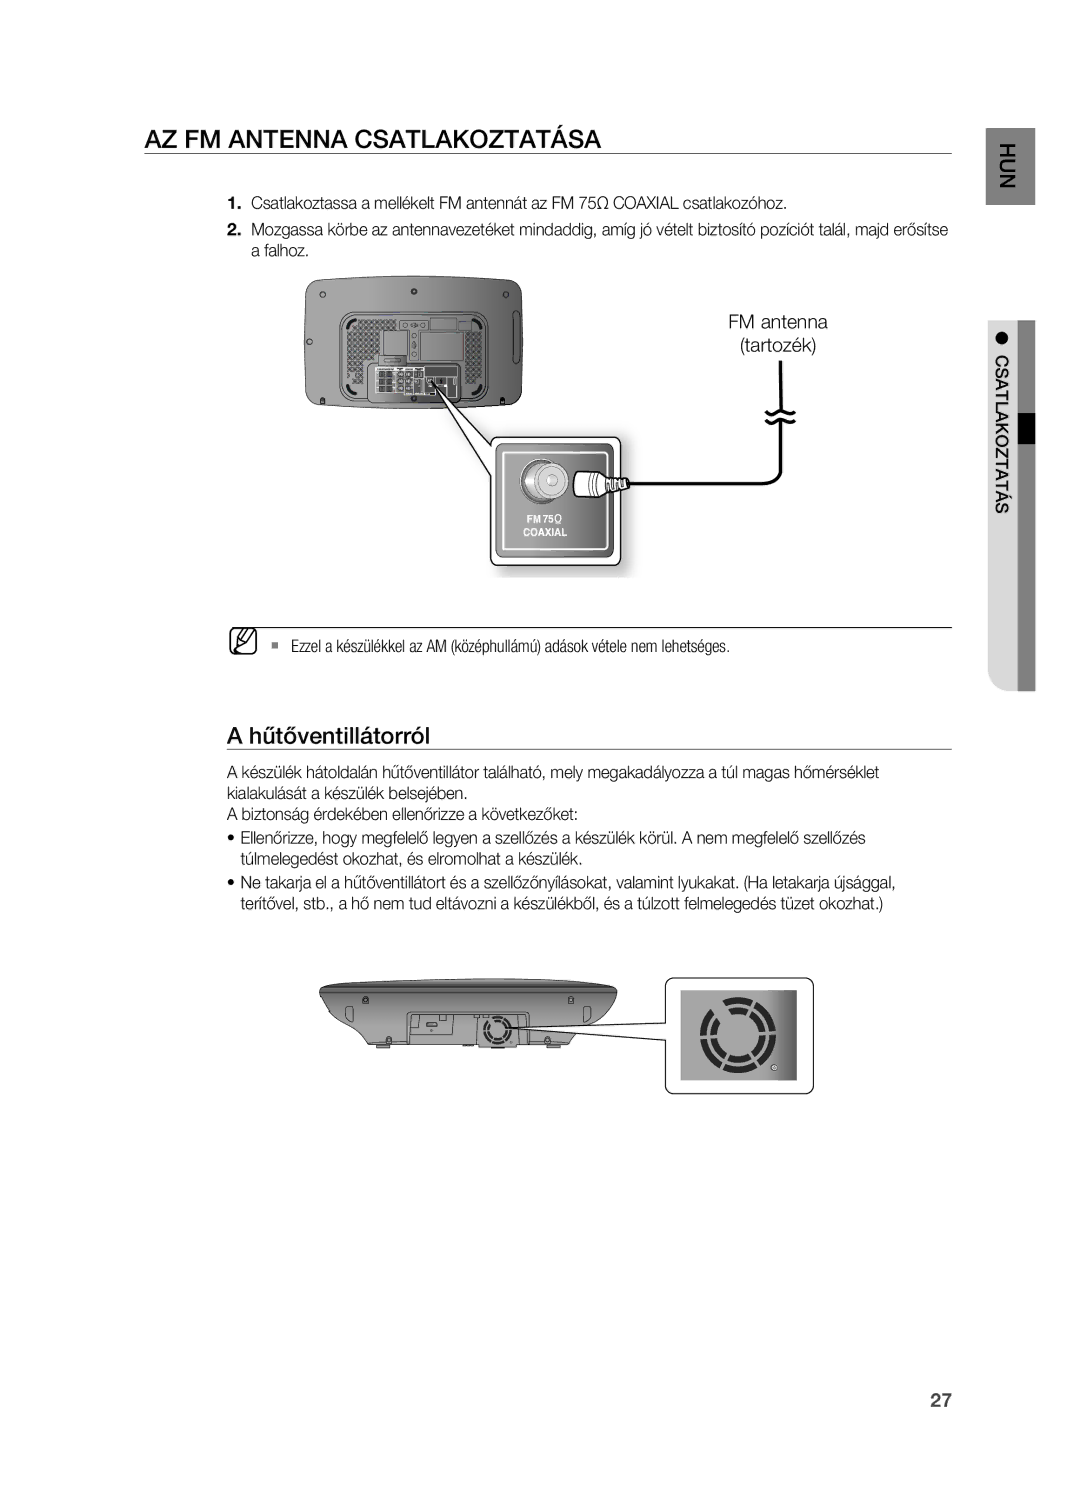 Samsung HT-X715T/XEE, HT-TX715T/EDC, HT-X715T/EDC, HT-TX715T/XEE manual Az FM Antenna CSATLAKOzTATáSA, Hűtőventillátorról 